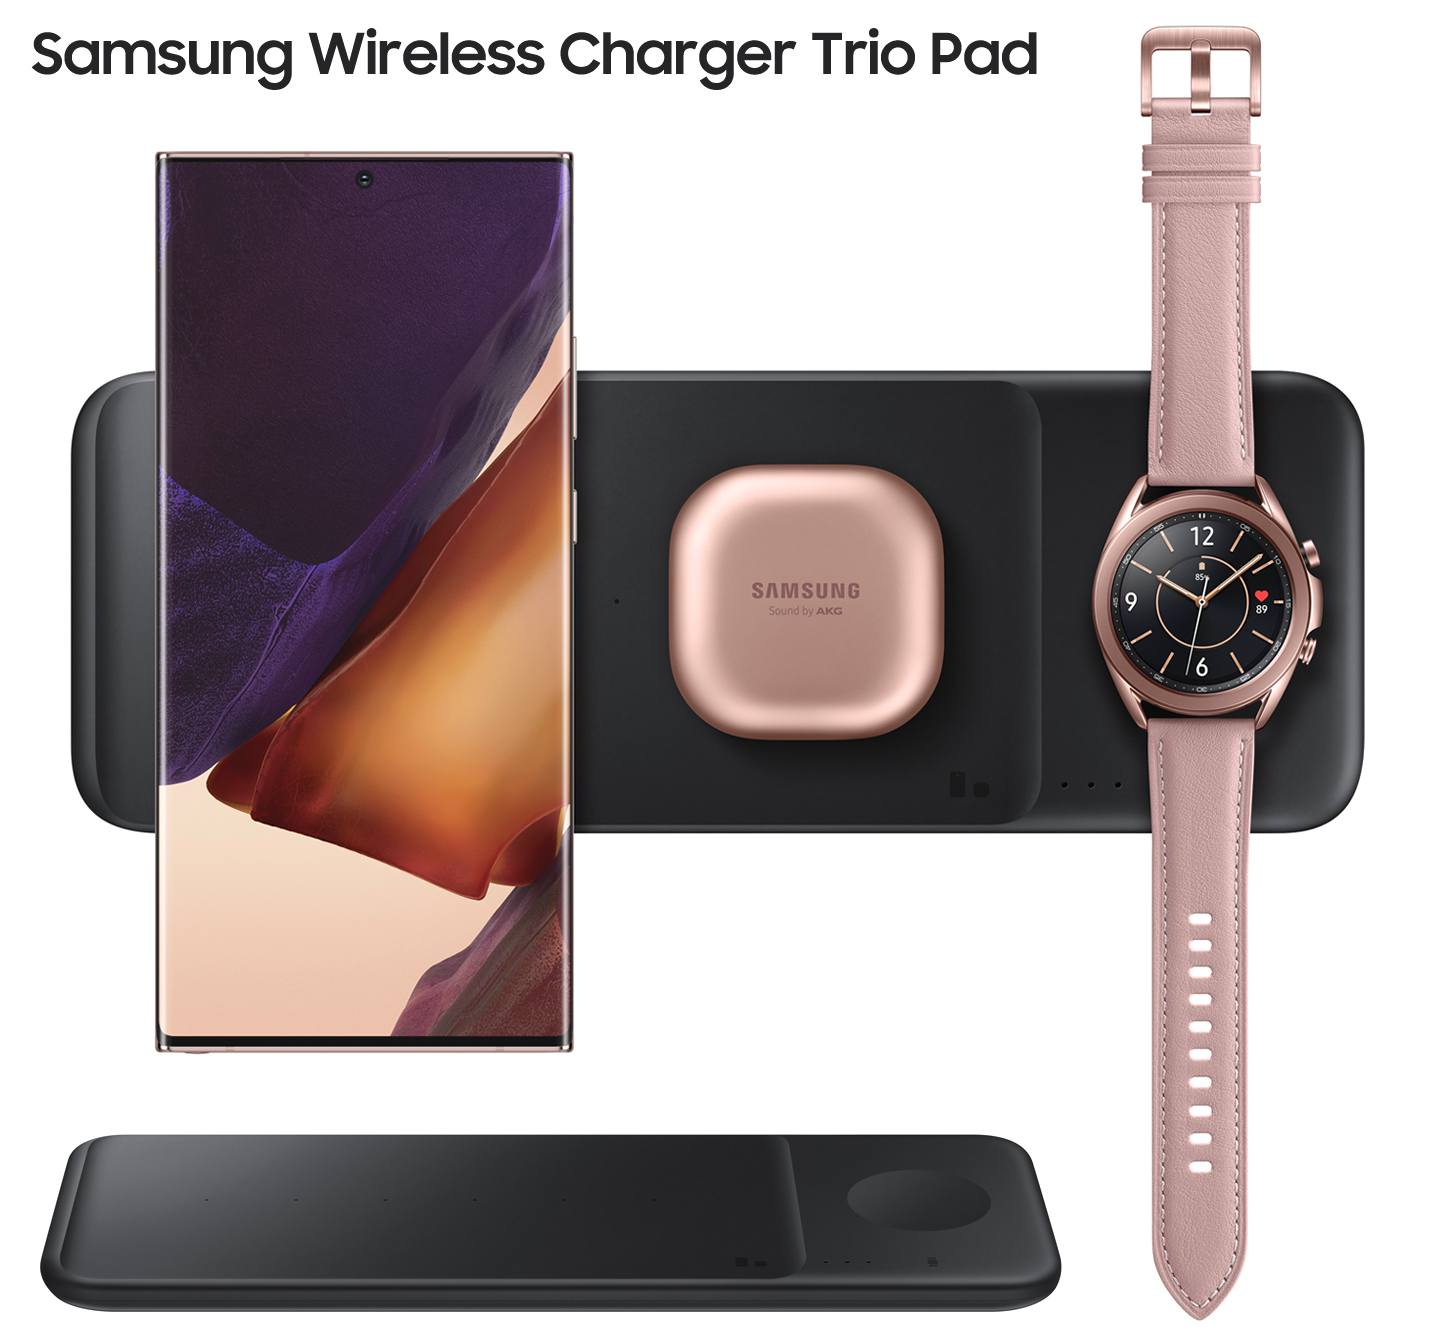 stout helper Voorganger Samsung wireless charger kopen voor je telefoon of smartwatch |  LetsGoDigital